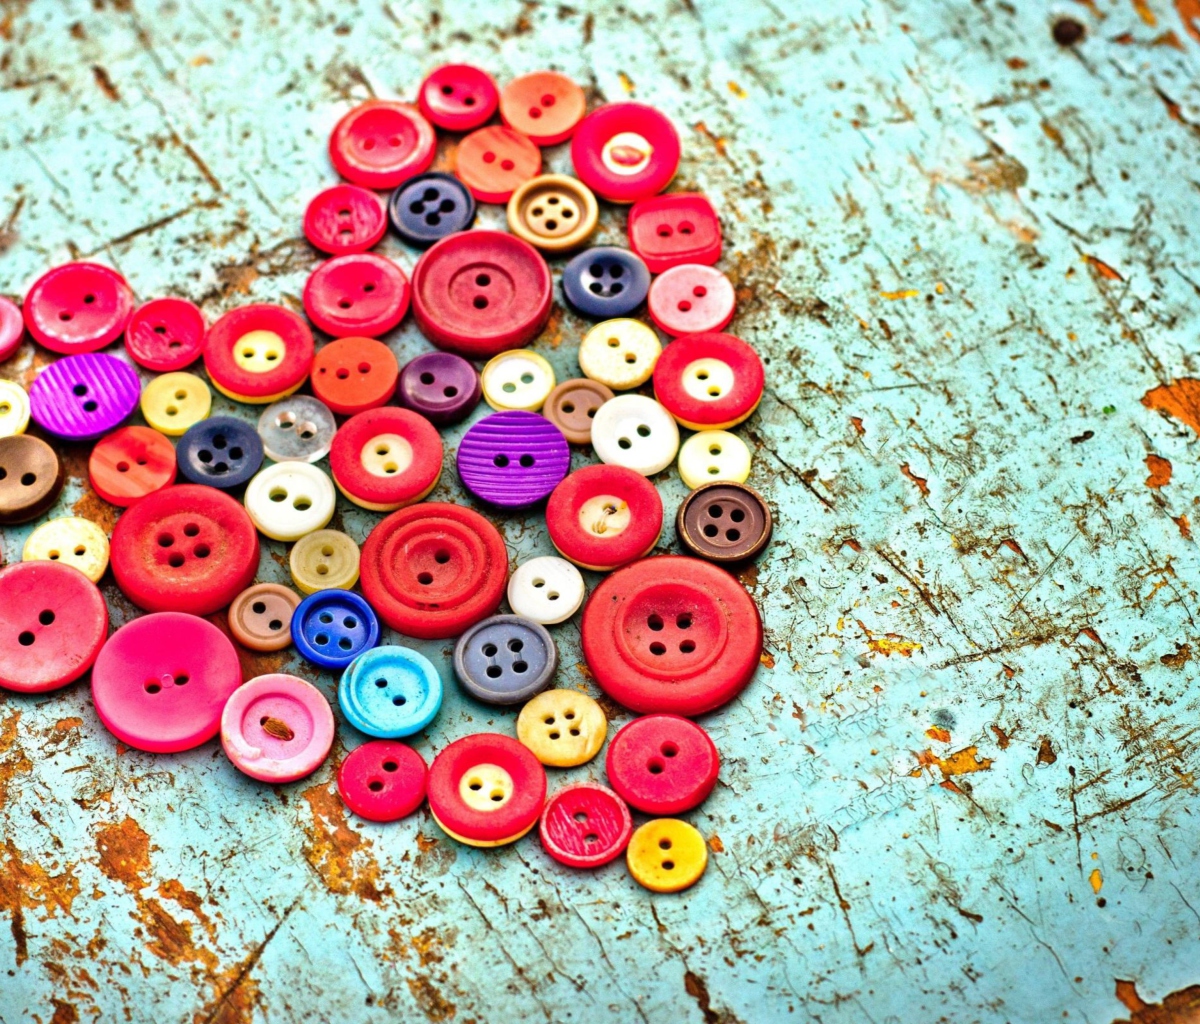 Das Heart of the Buttons Wallpaper 1200x1024